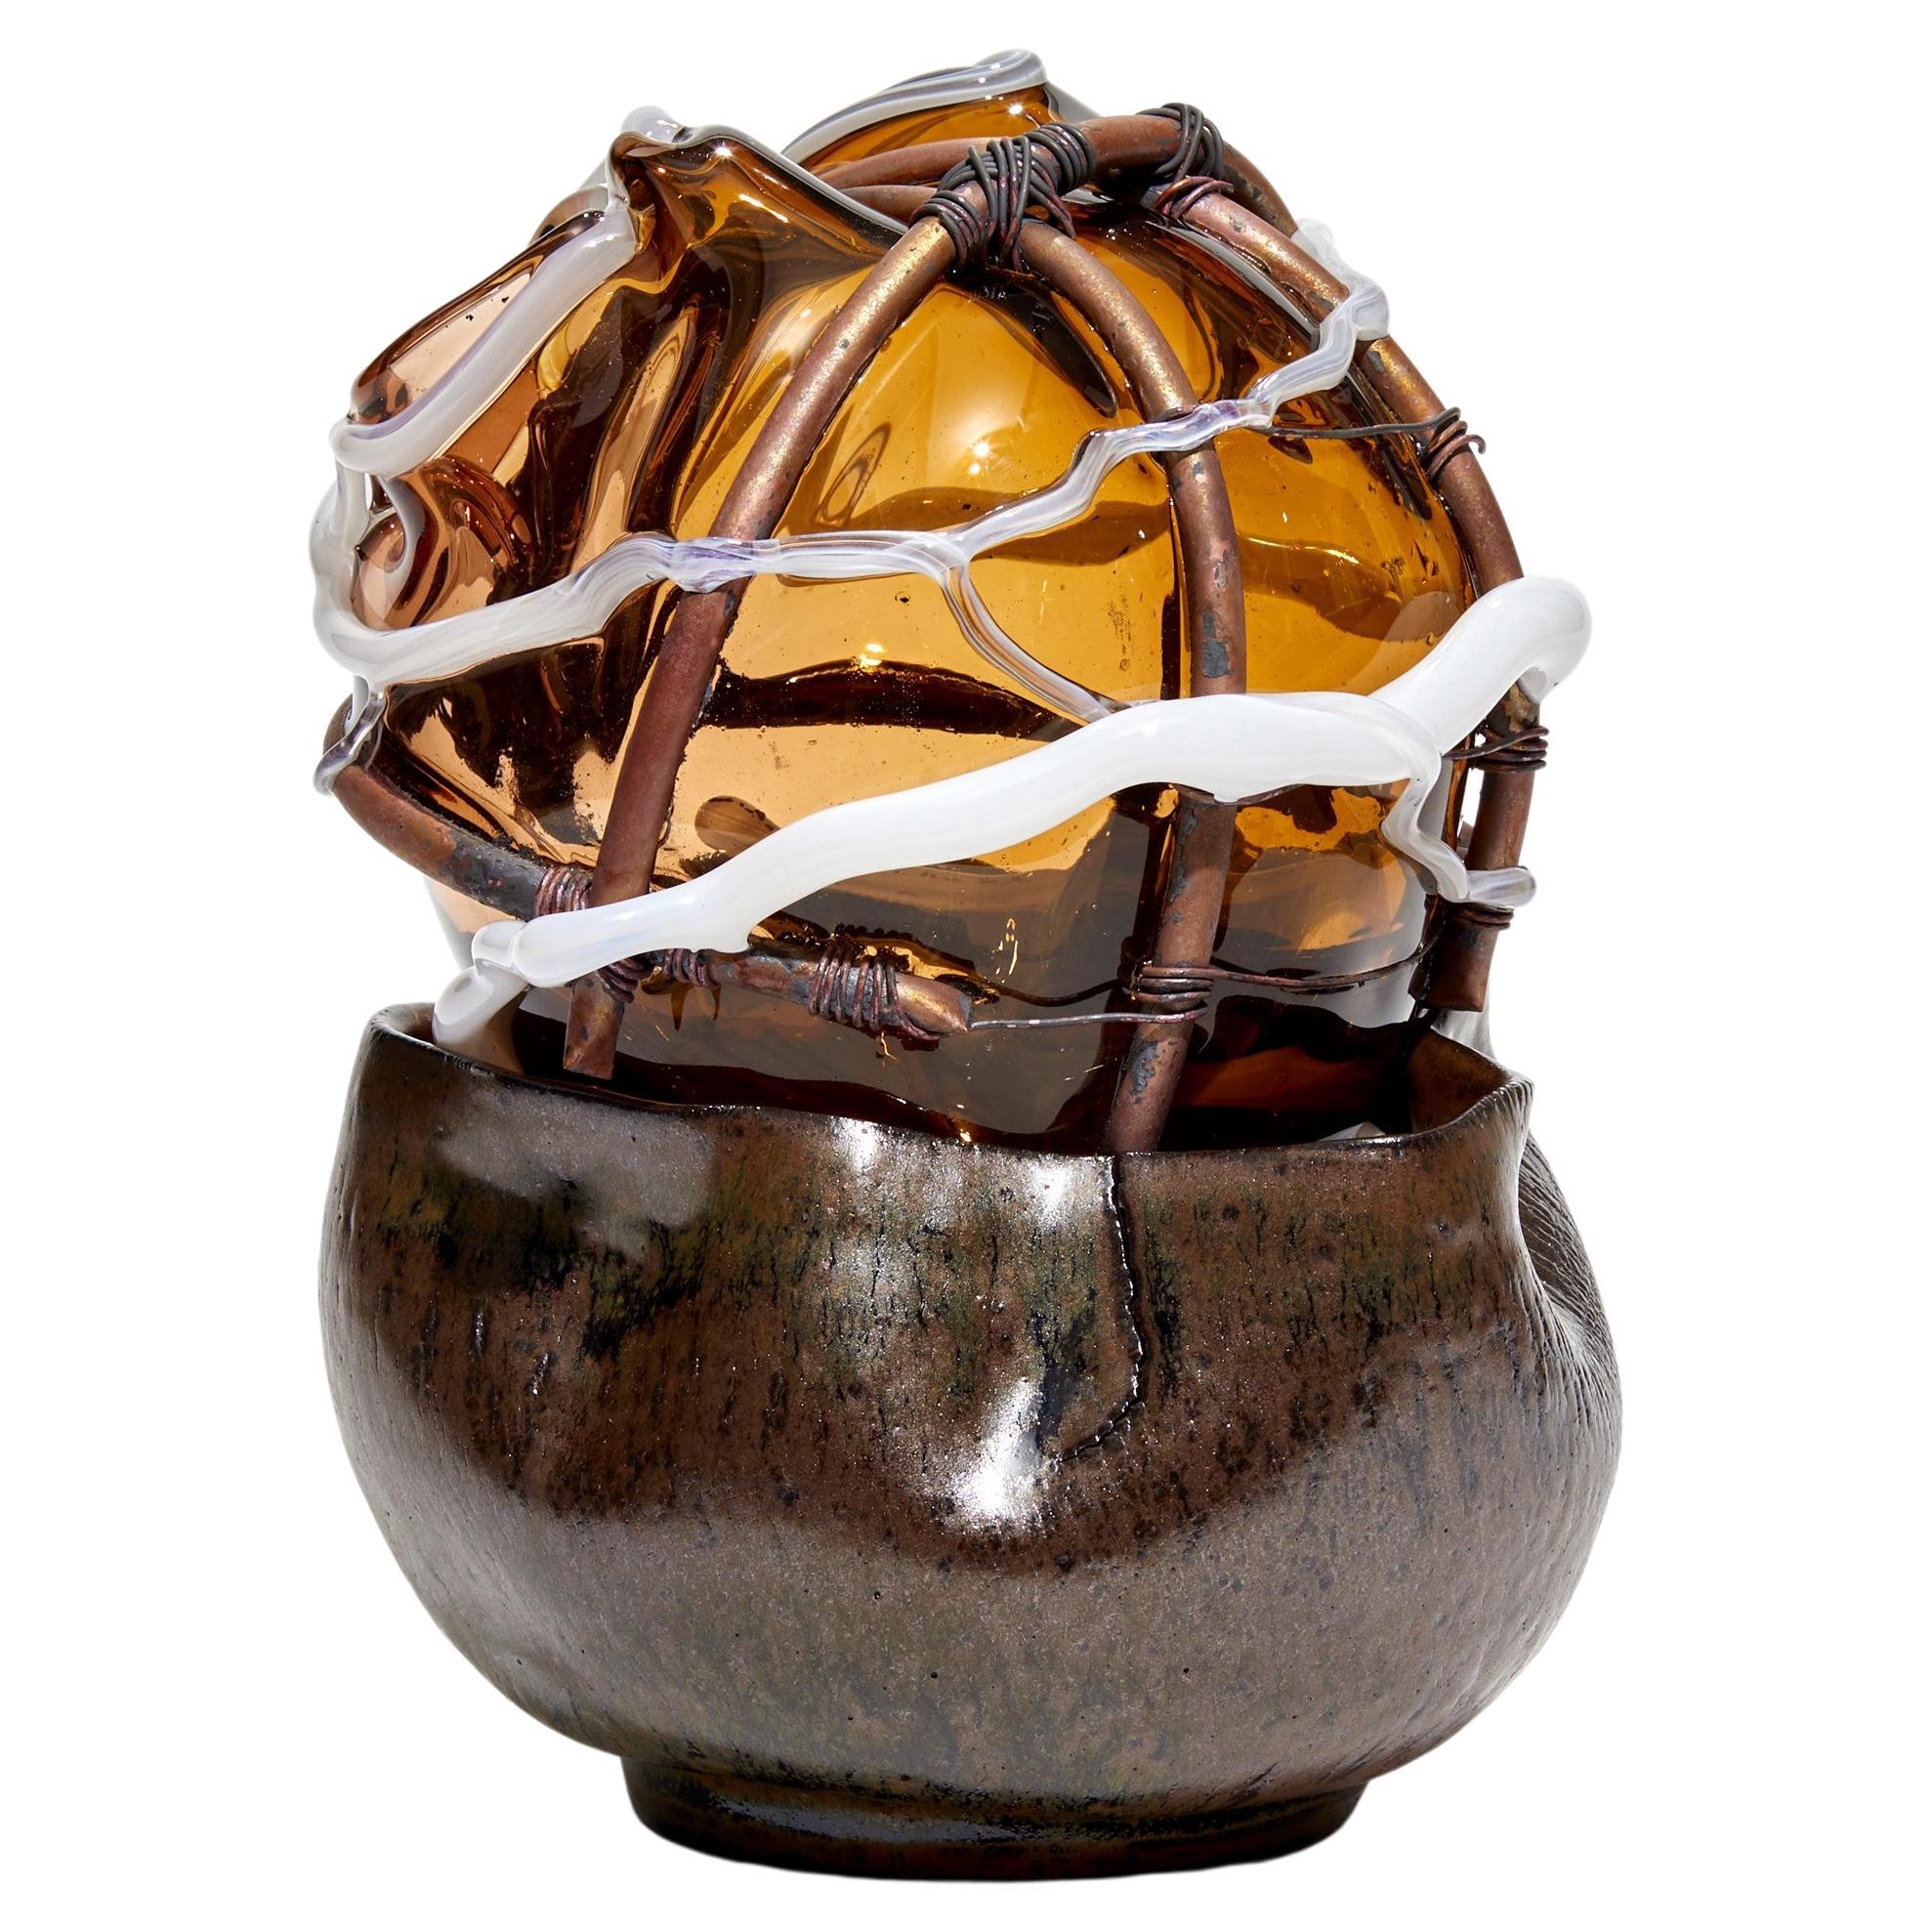  Fruit trange, le ecclsiastique VIII, une sculpture en verre et en cramique de Chris Day